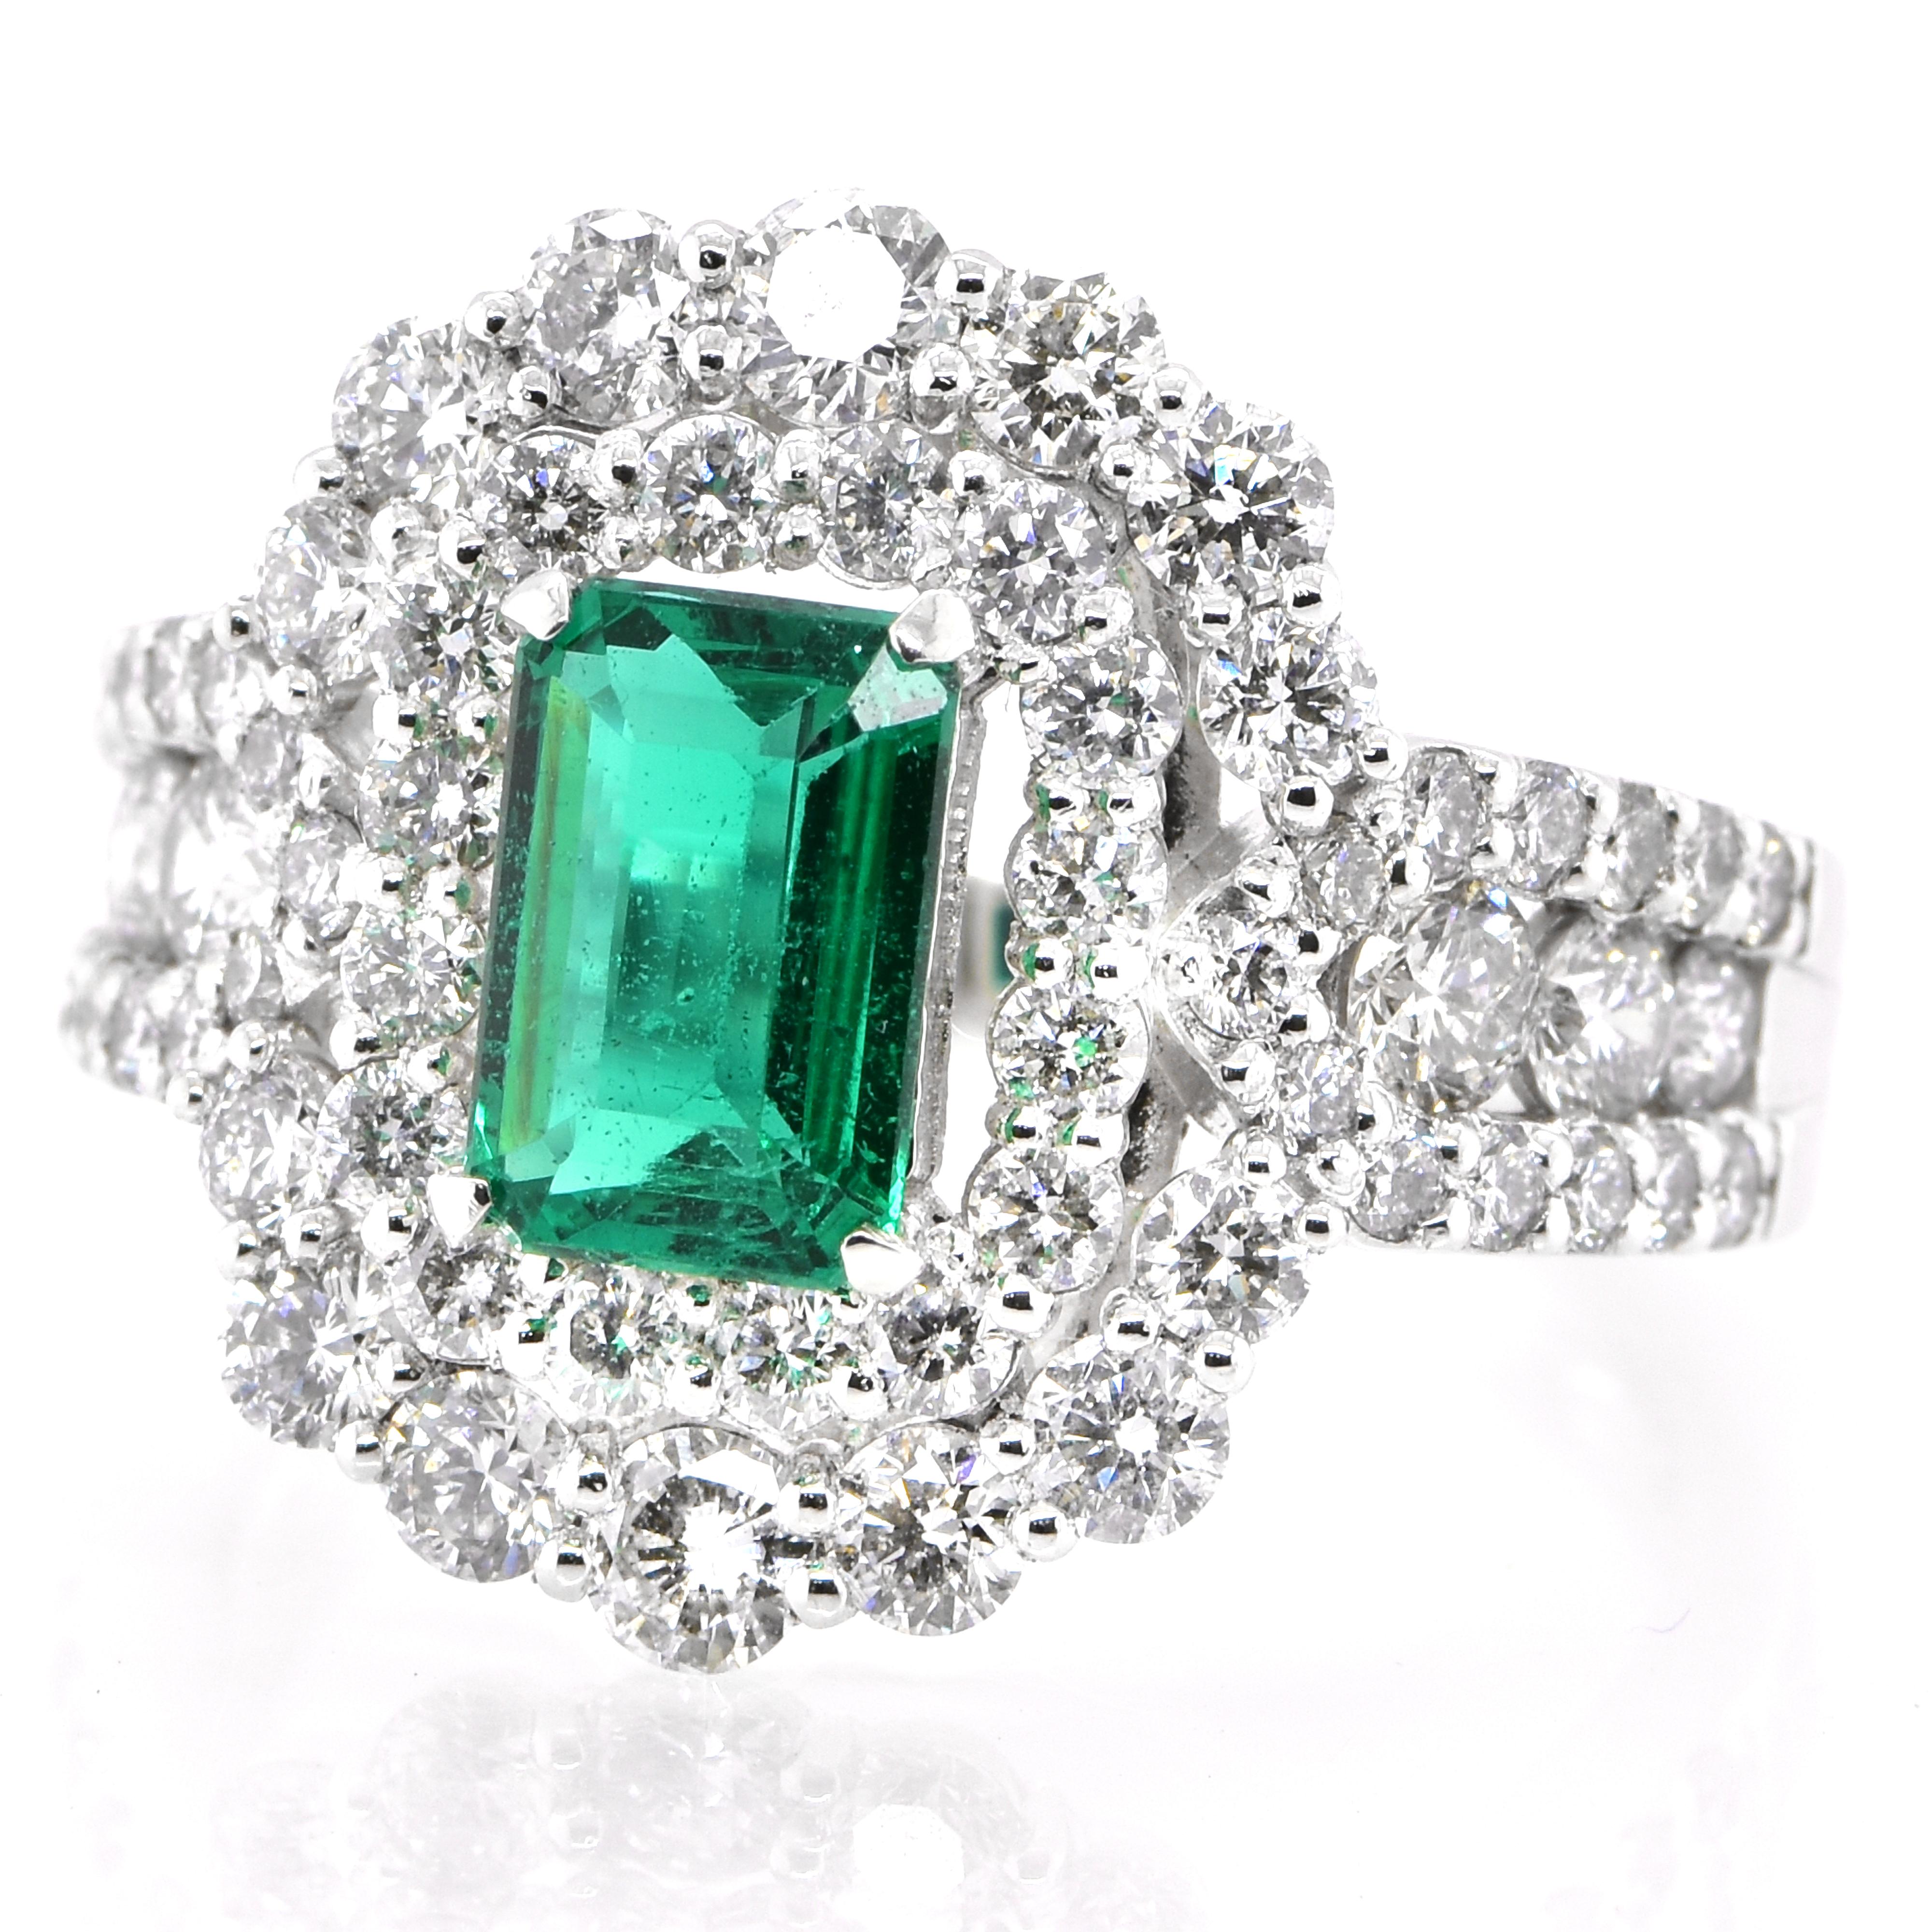 Ein atemberaubender Ring mit einem GIA-zertifizierten 1,17 Karat natürlichen, unbehandelten (kein Öl), sambischen Smaragd und 1,72 Karat Diamanten in Platin gefasst. Seit Tausenden von Jahren bewundern die Menschen das Grün des Smaragds. Smaragde